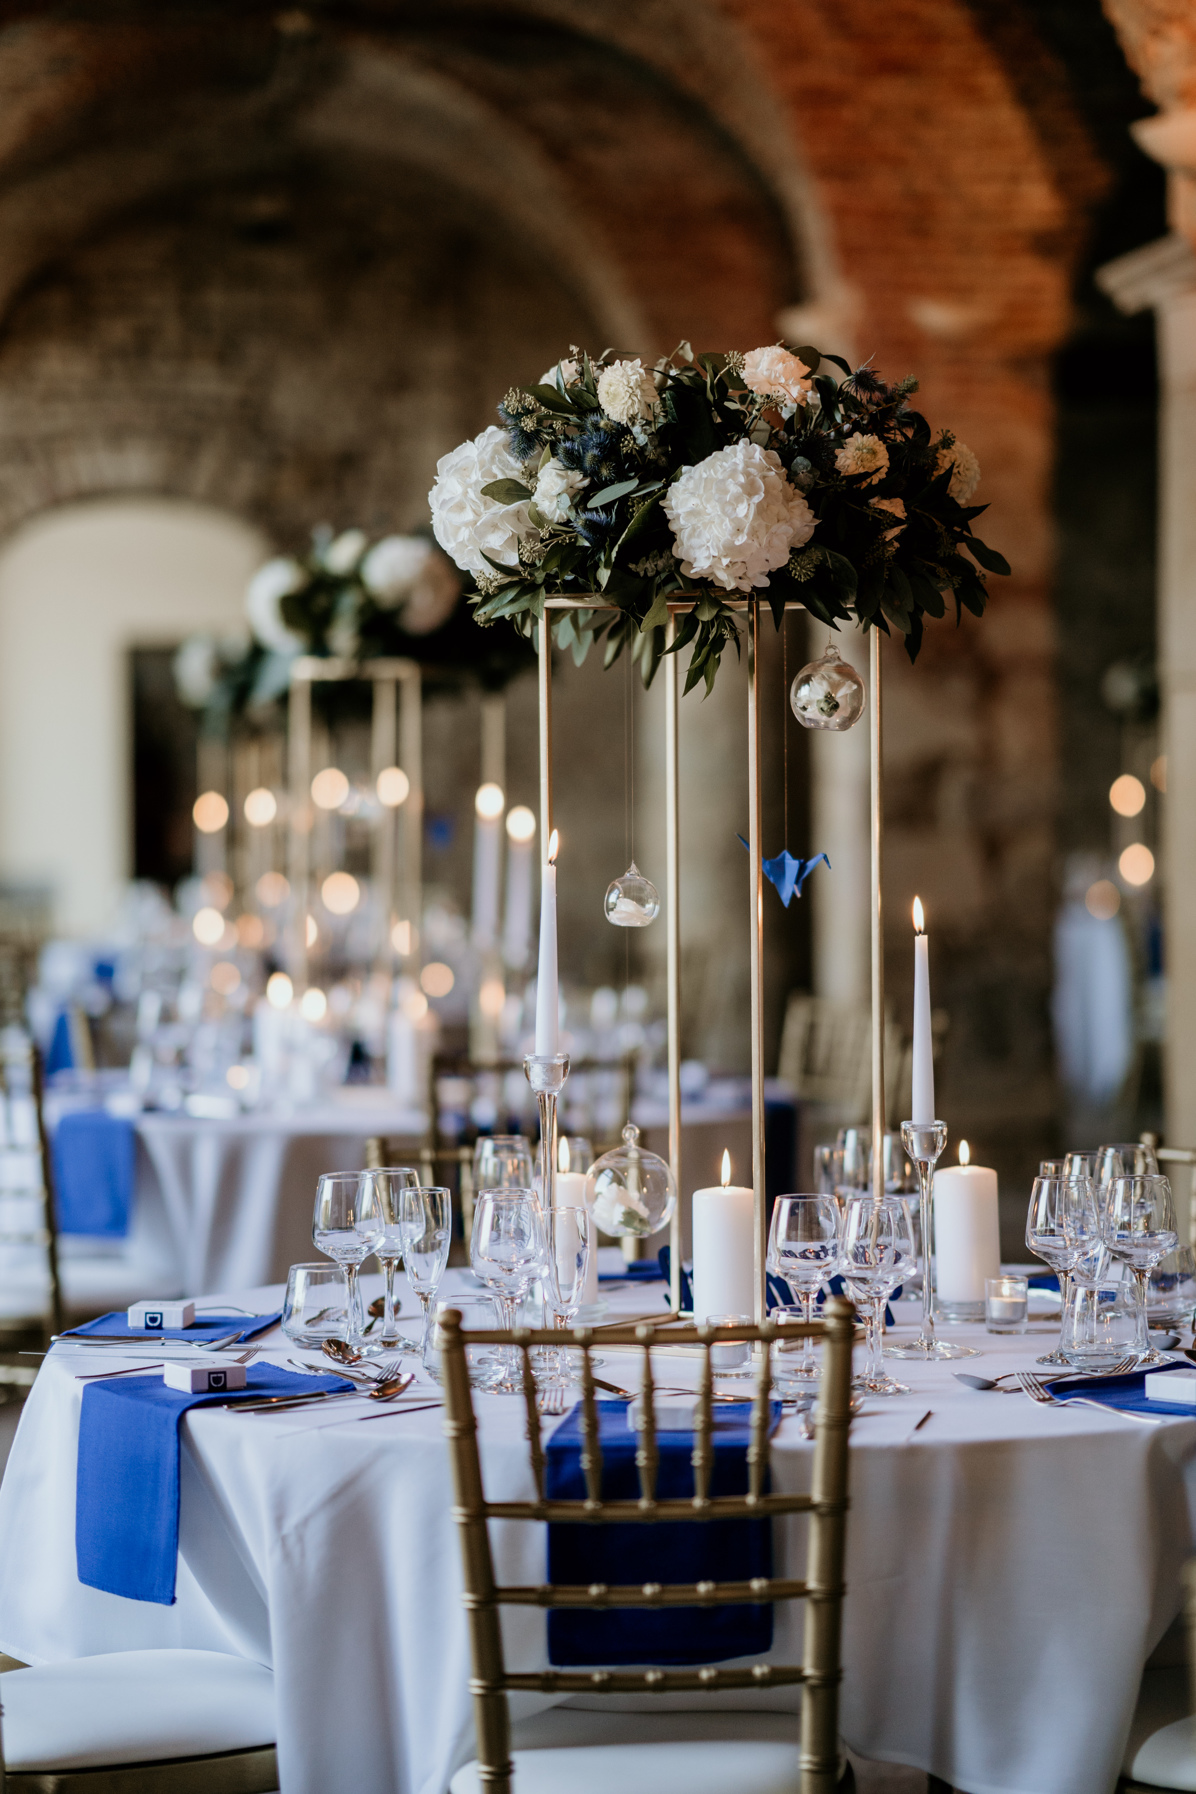 décoration mariage centre de table dore et bleu or wedding planner lyon organisation mariage beaujolais